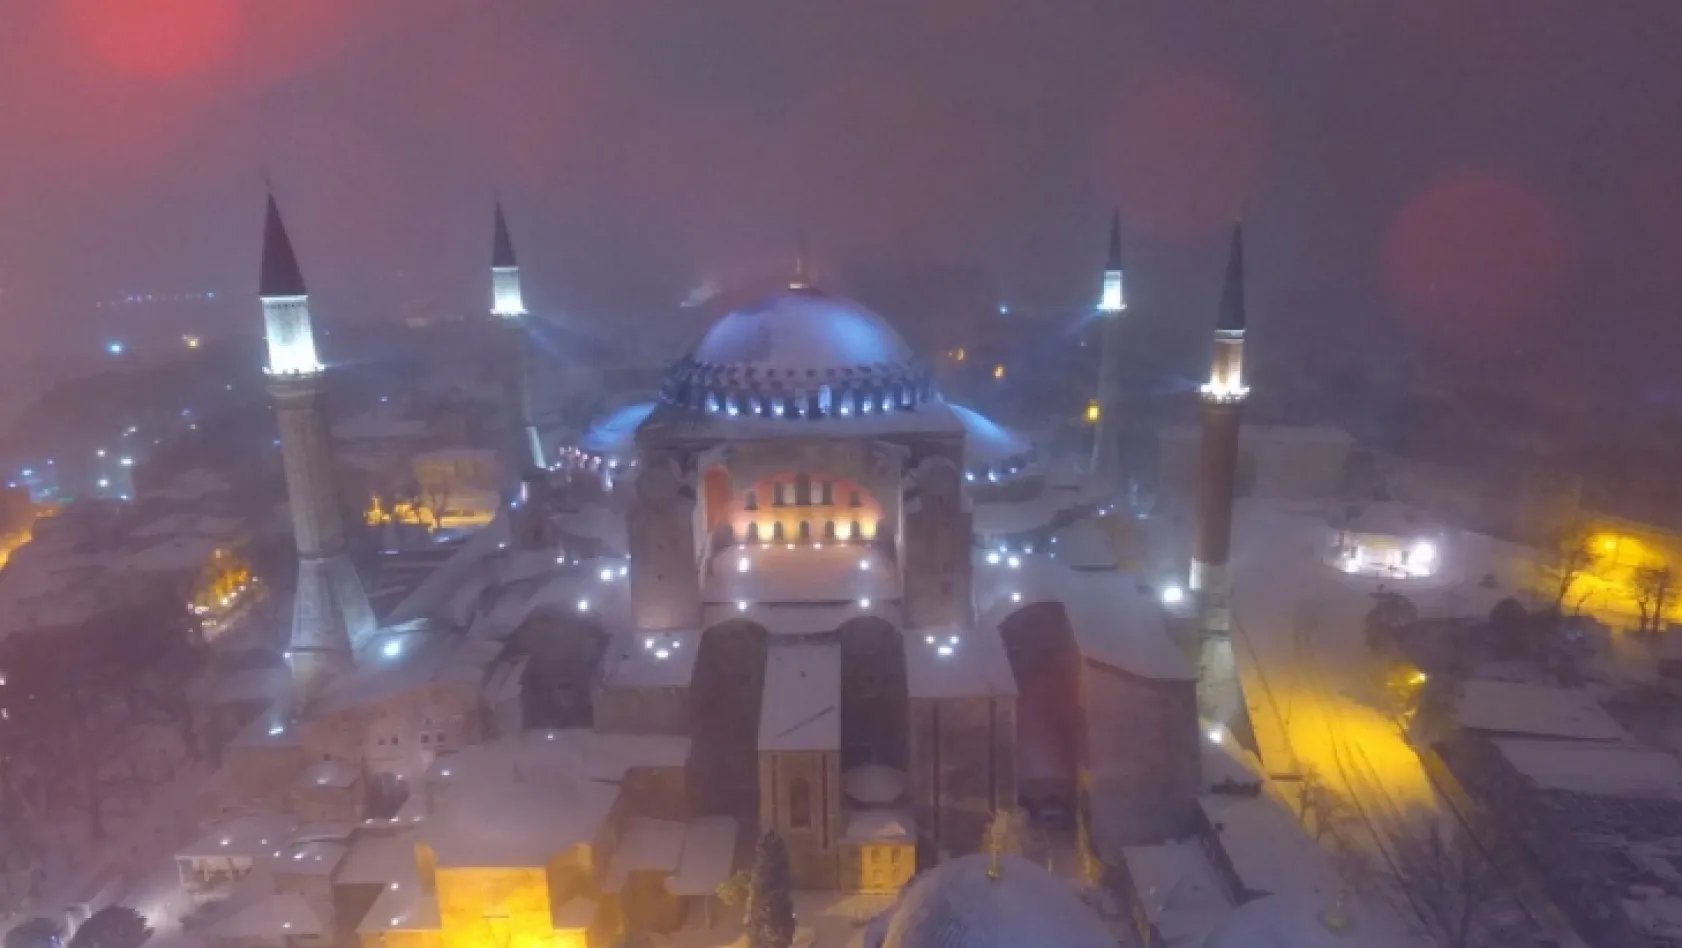 İstanbul'da kar yağışı kartpostallık görüntüler oluşturdu